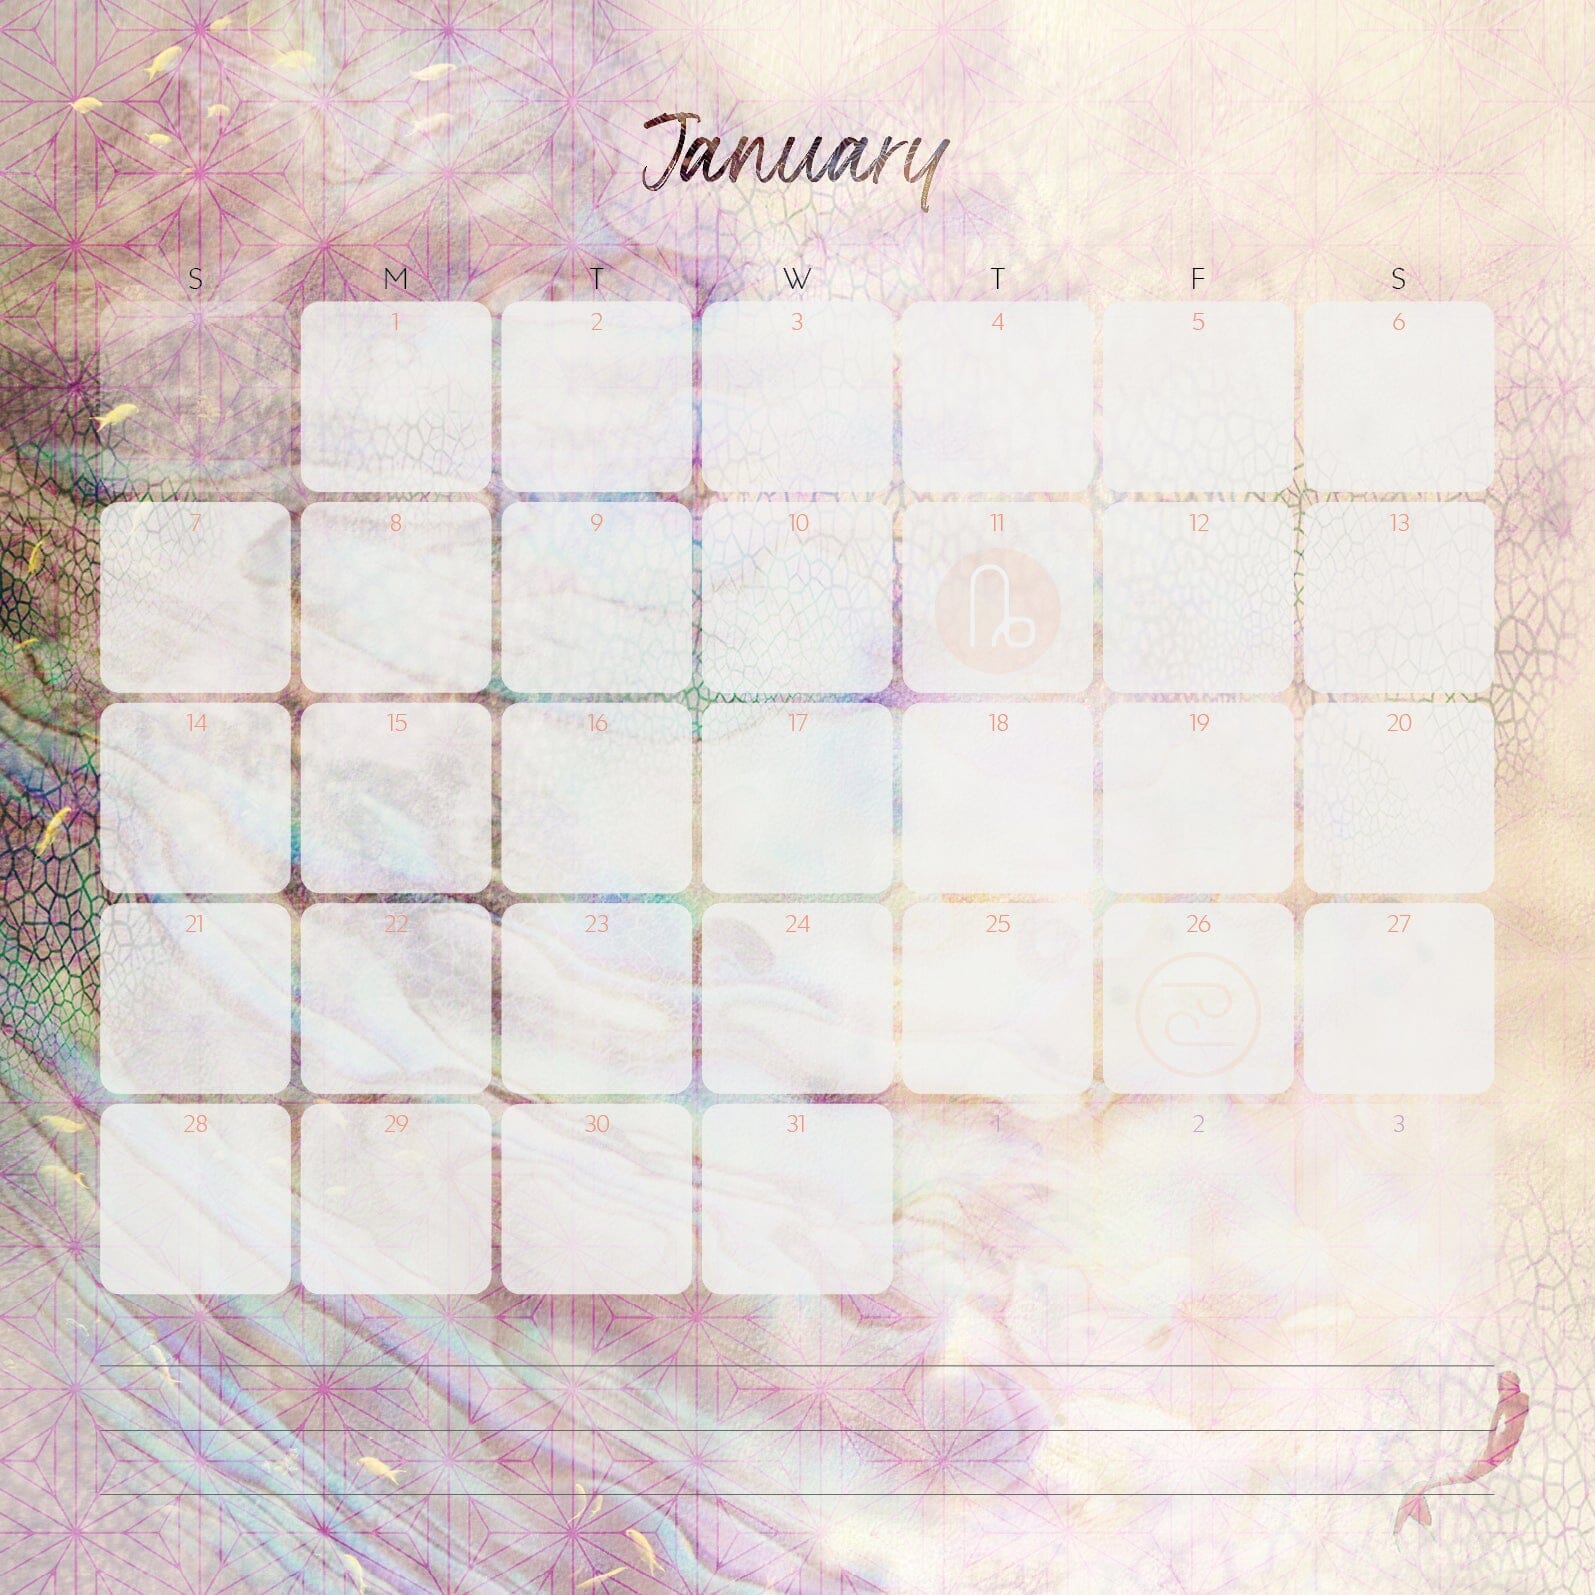 2024 Moon Calendar Calendar The Dusty Mermaid 